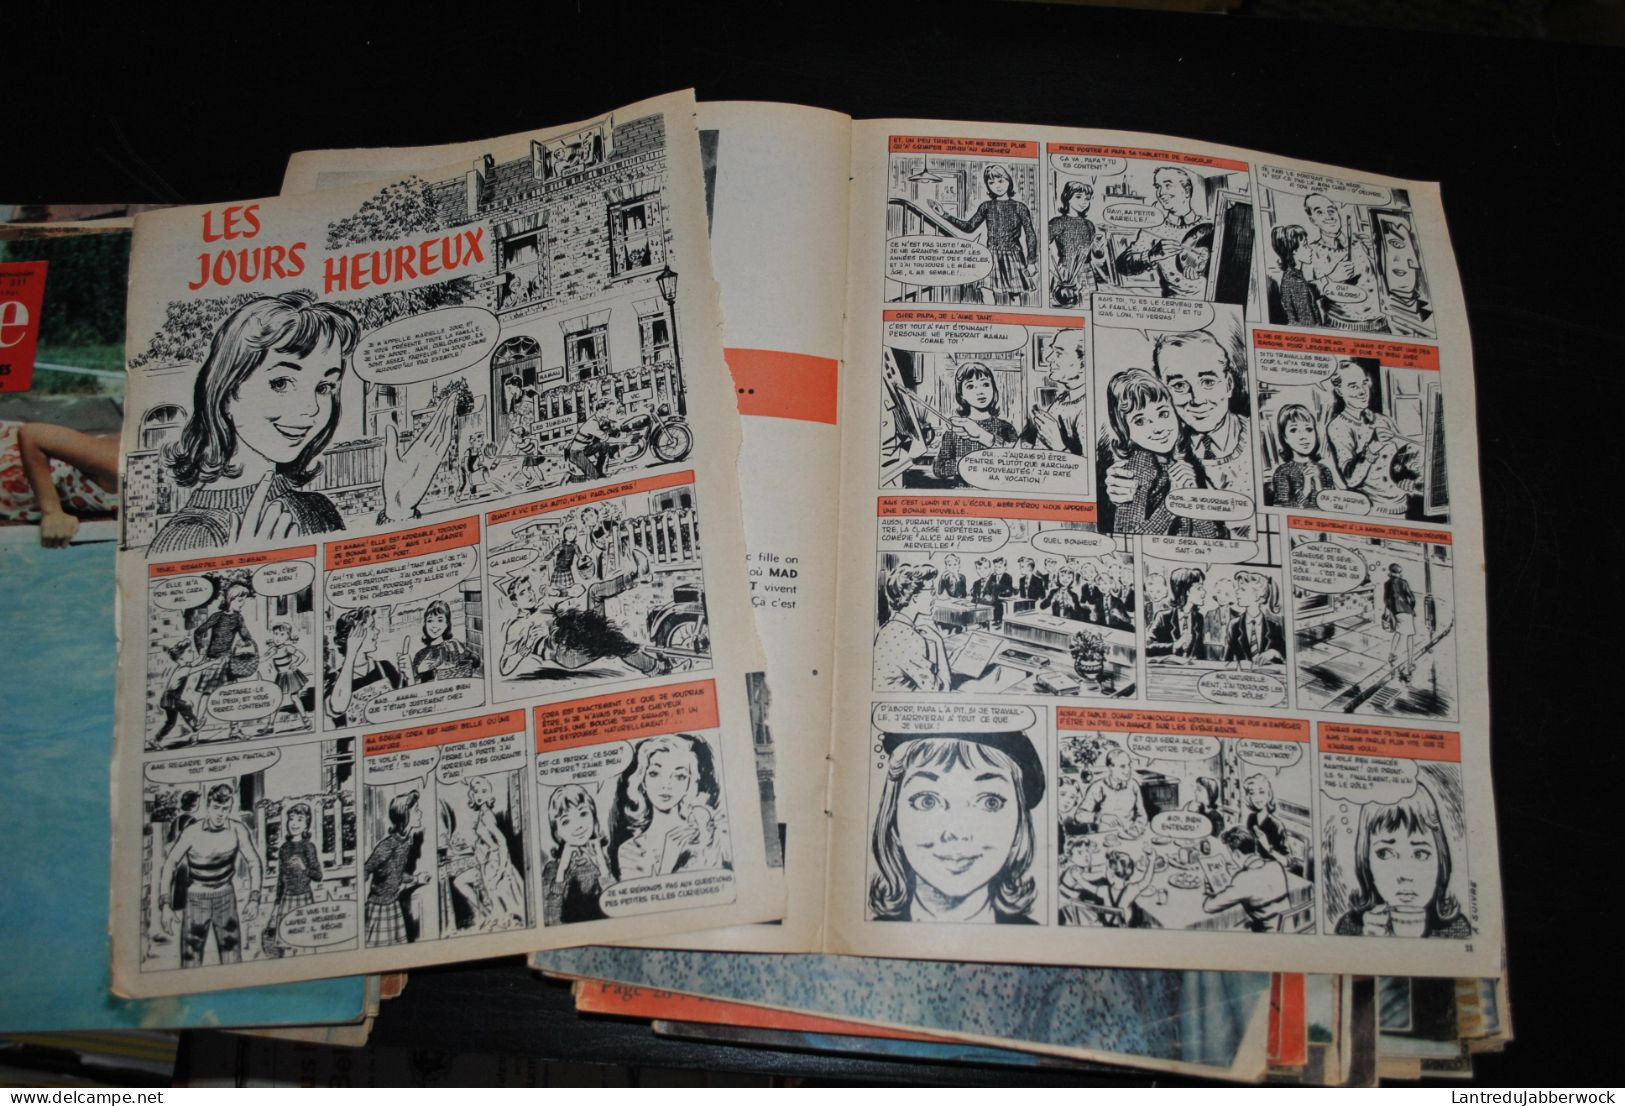 IMPORTANT Lot de 58 Revues LINE Le Journal des chics filles VINTAGE RARE ENSEMBLE années 60